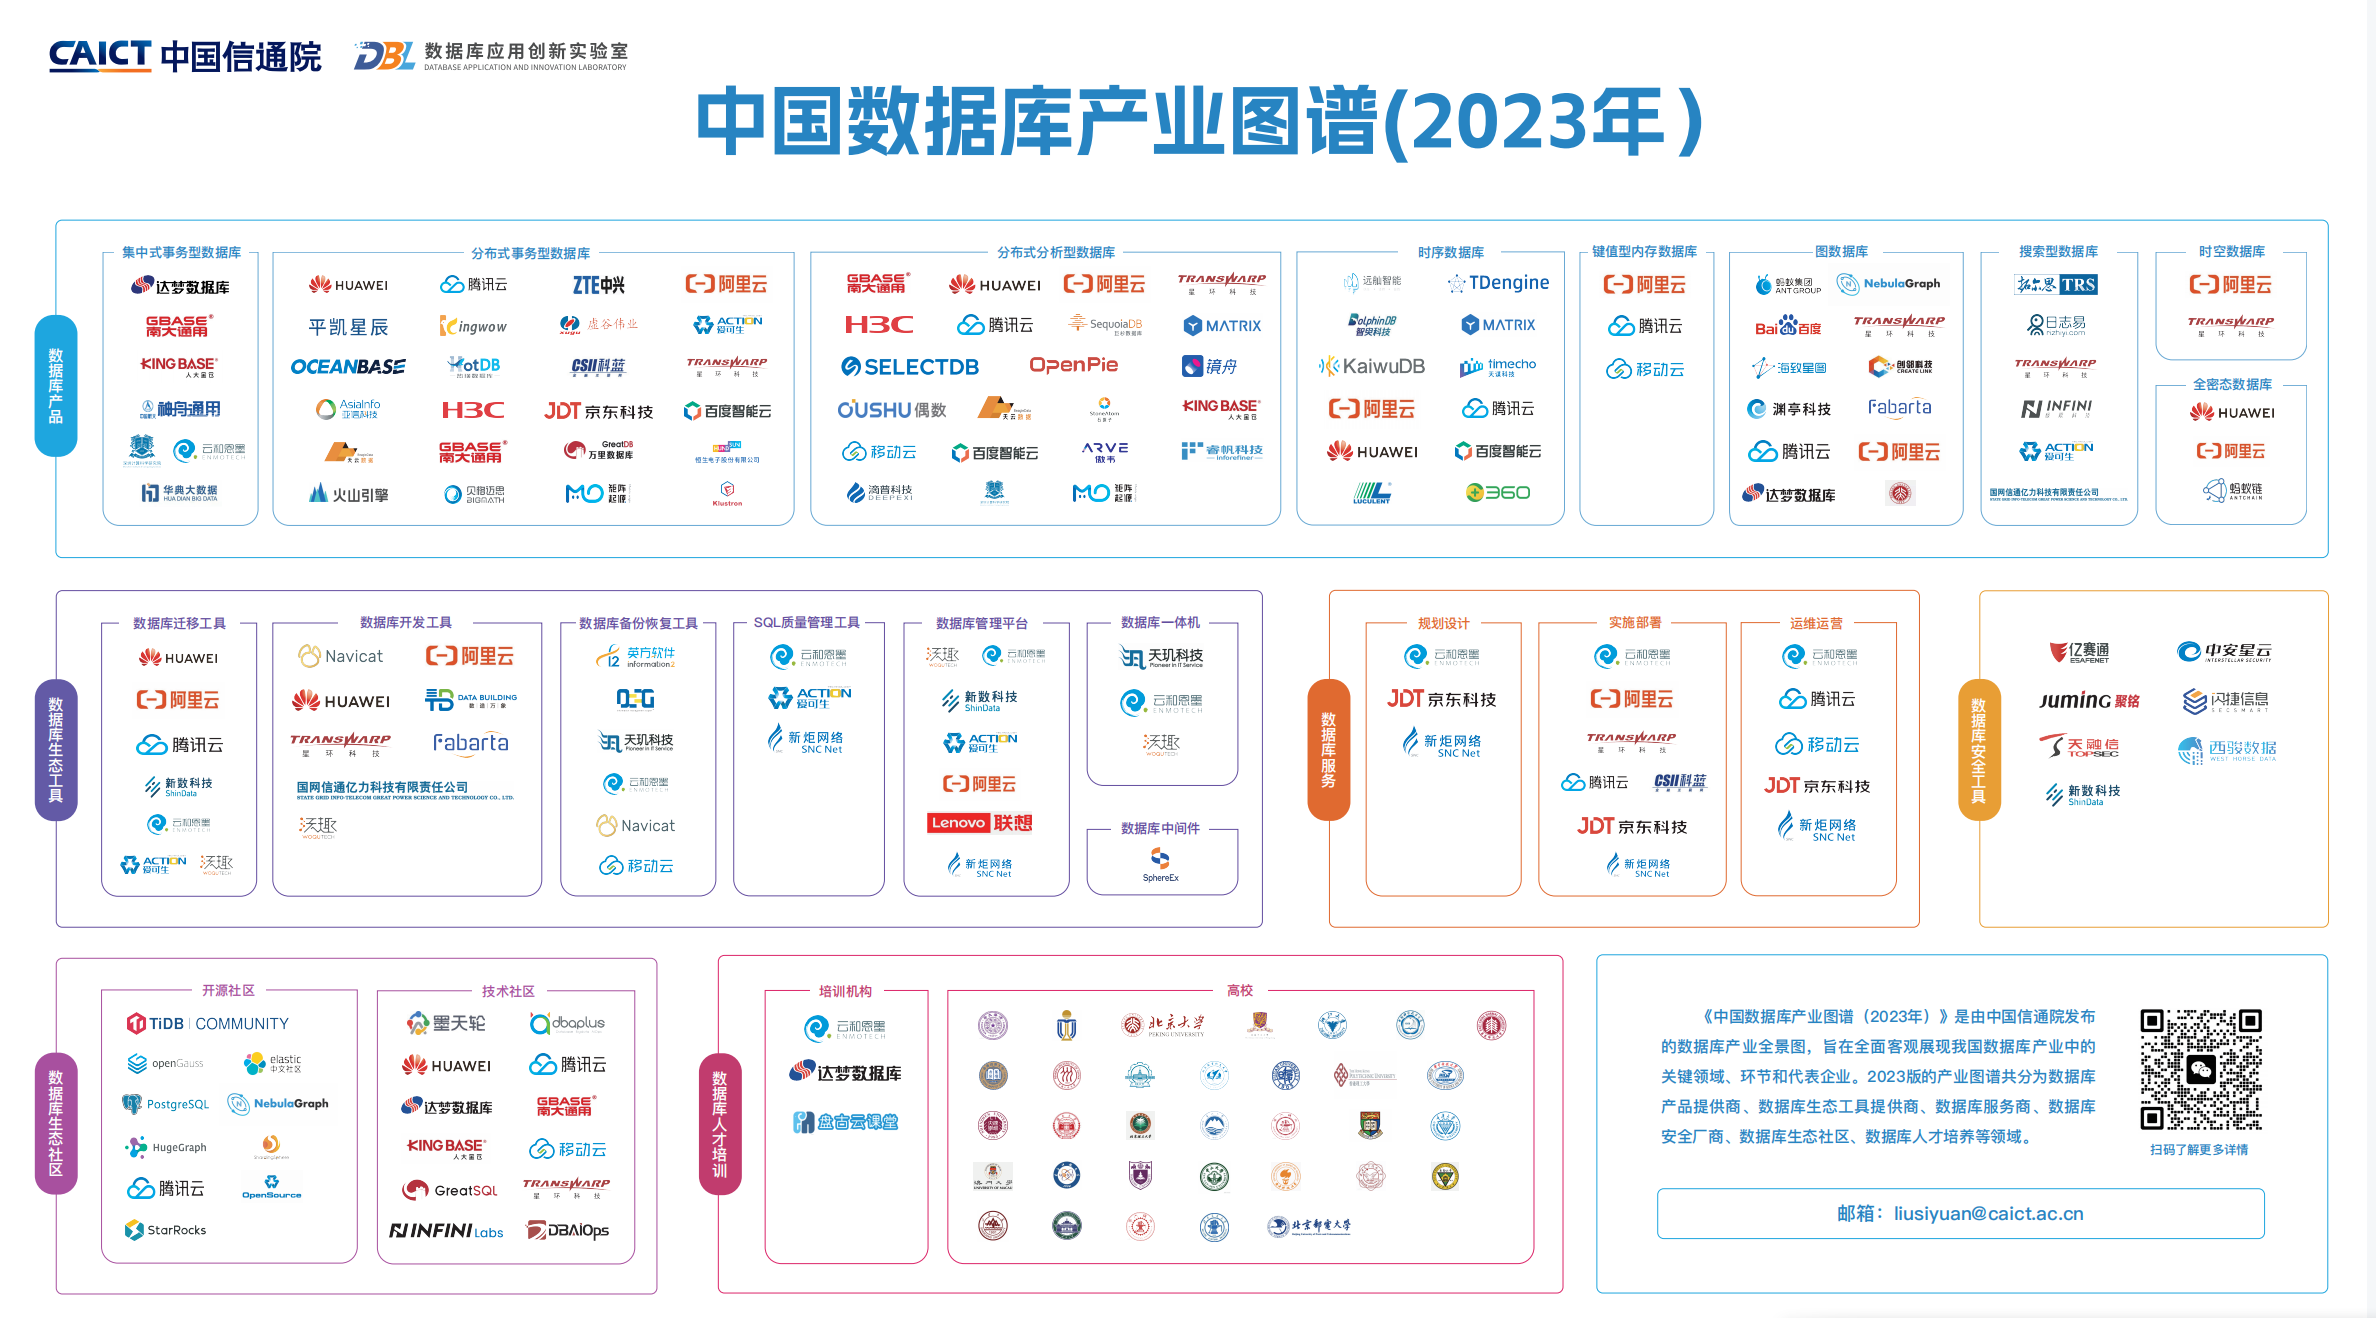 极限科技受邀参加2023可信数据库发展大会并入选“中国数据库产业图谱”